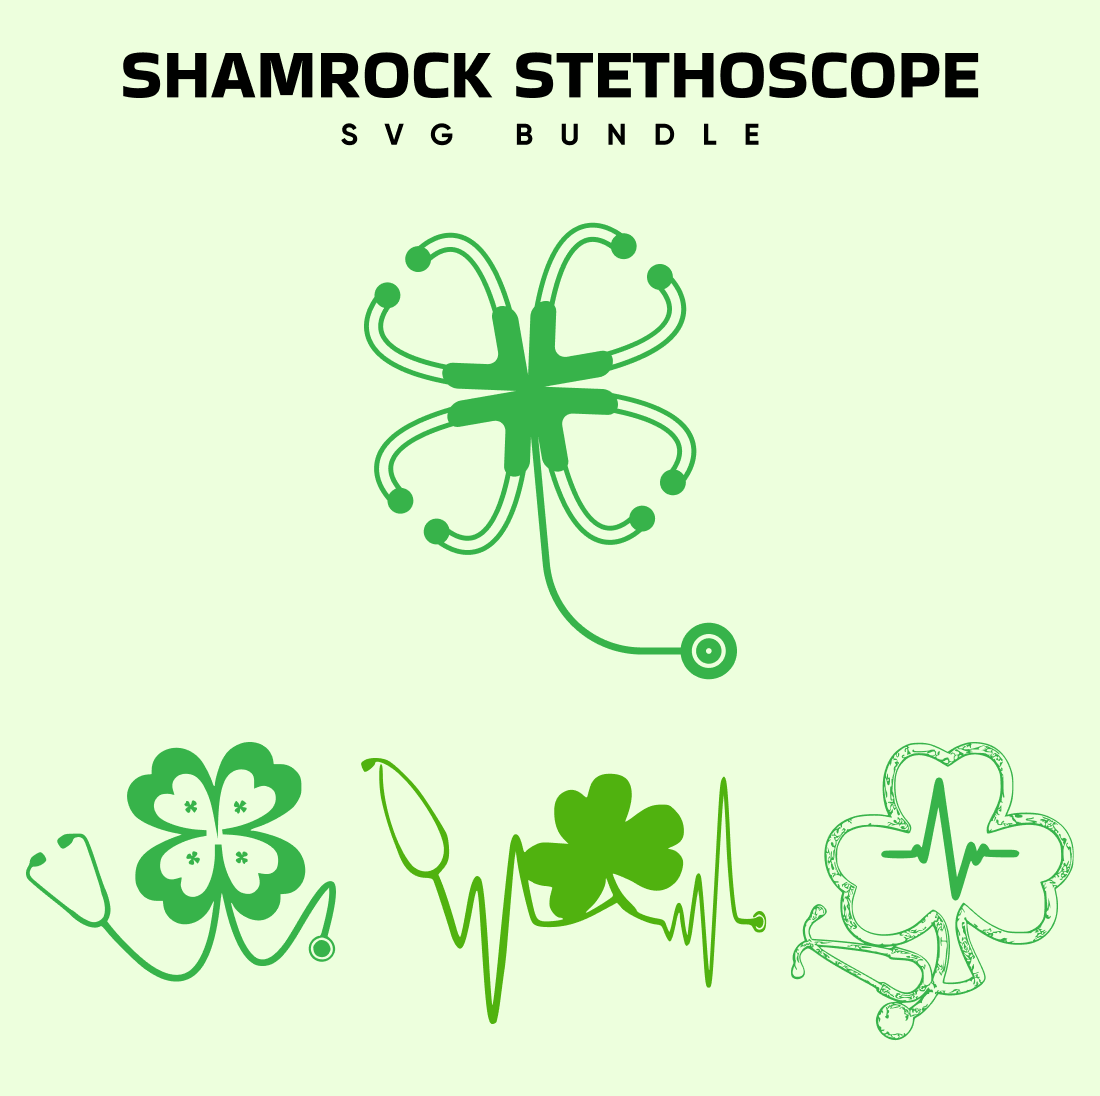 Shamrock Stethoscope SVG.